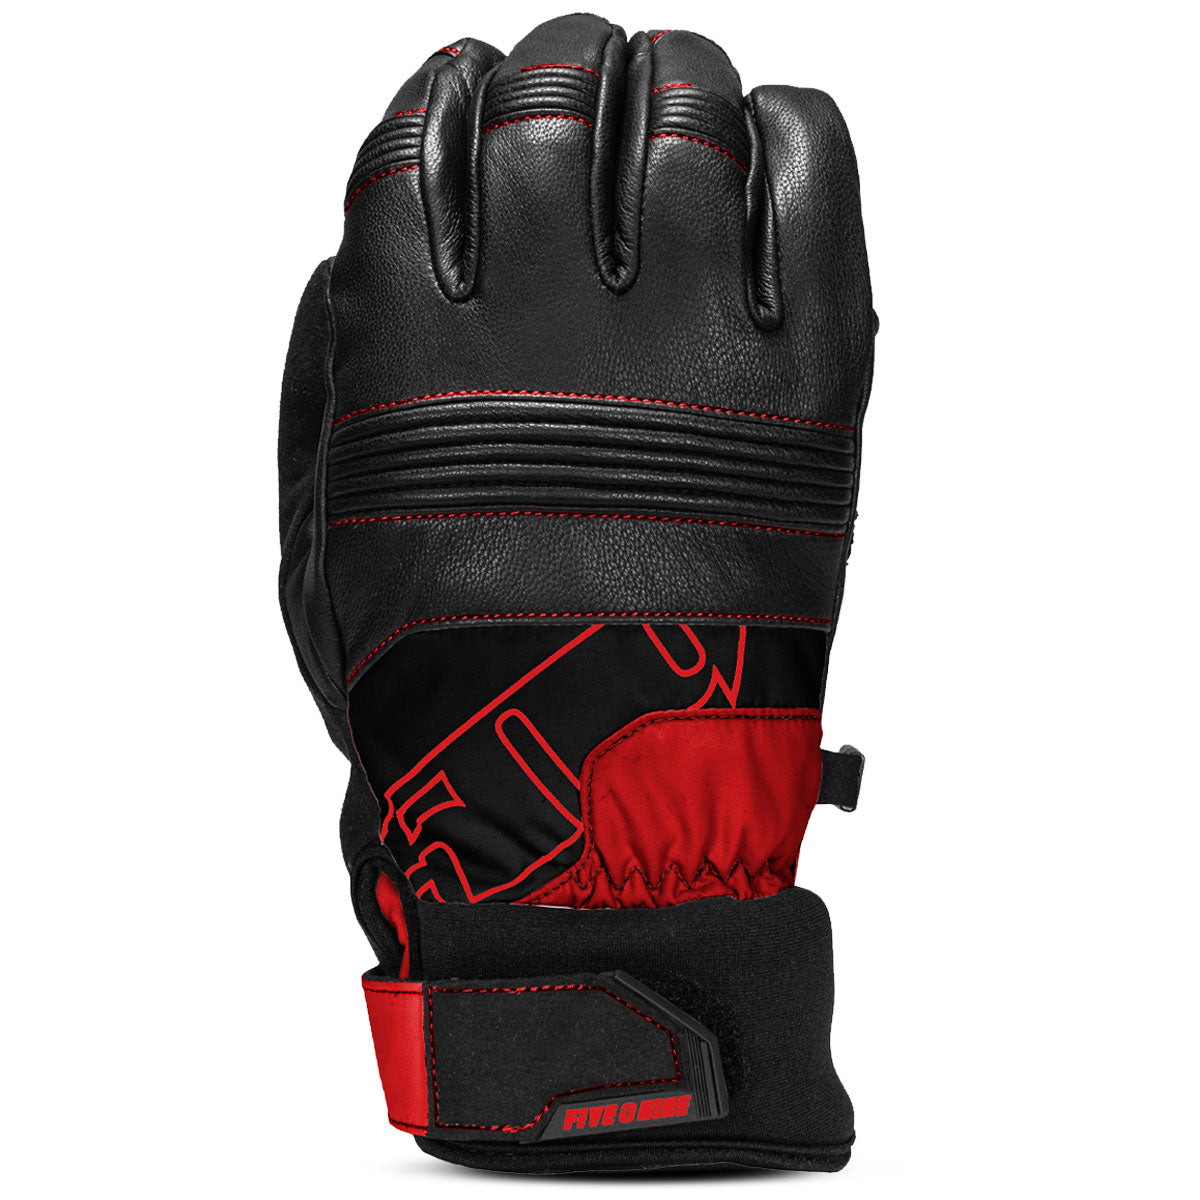 Free Range Gloves - Racing Red / XS